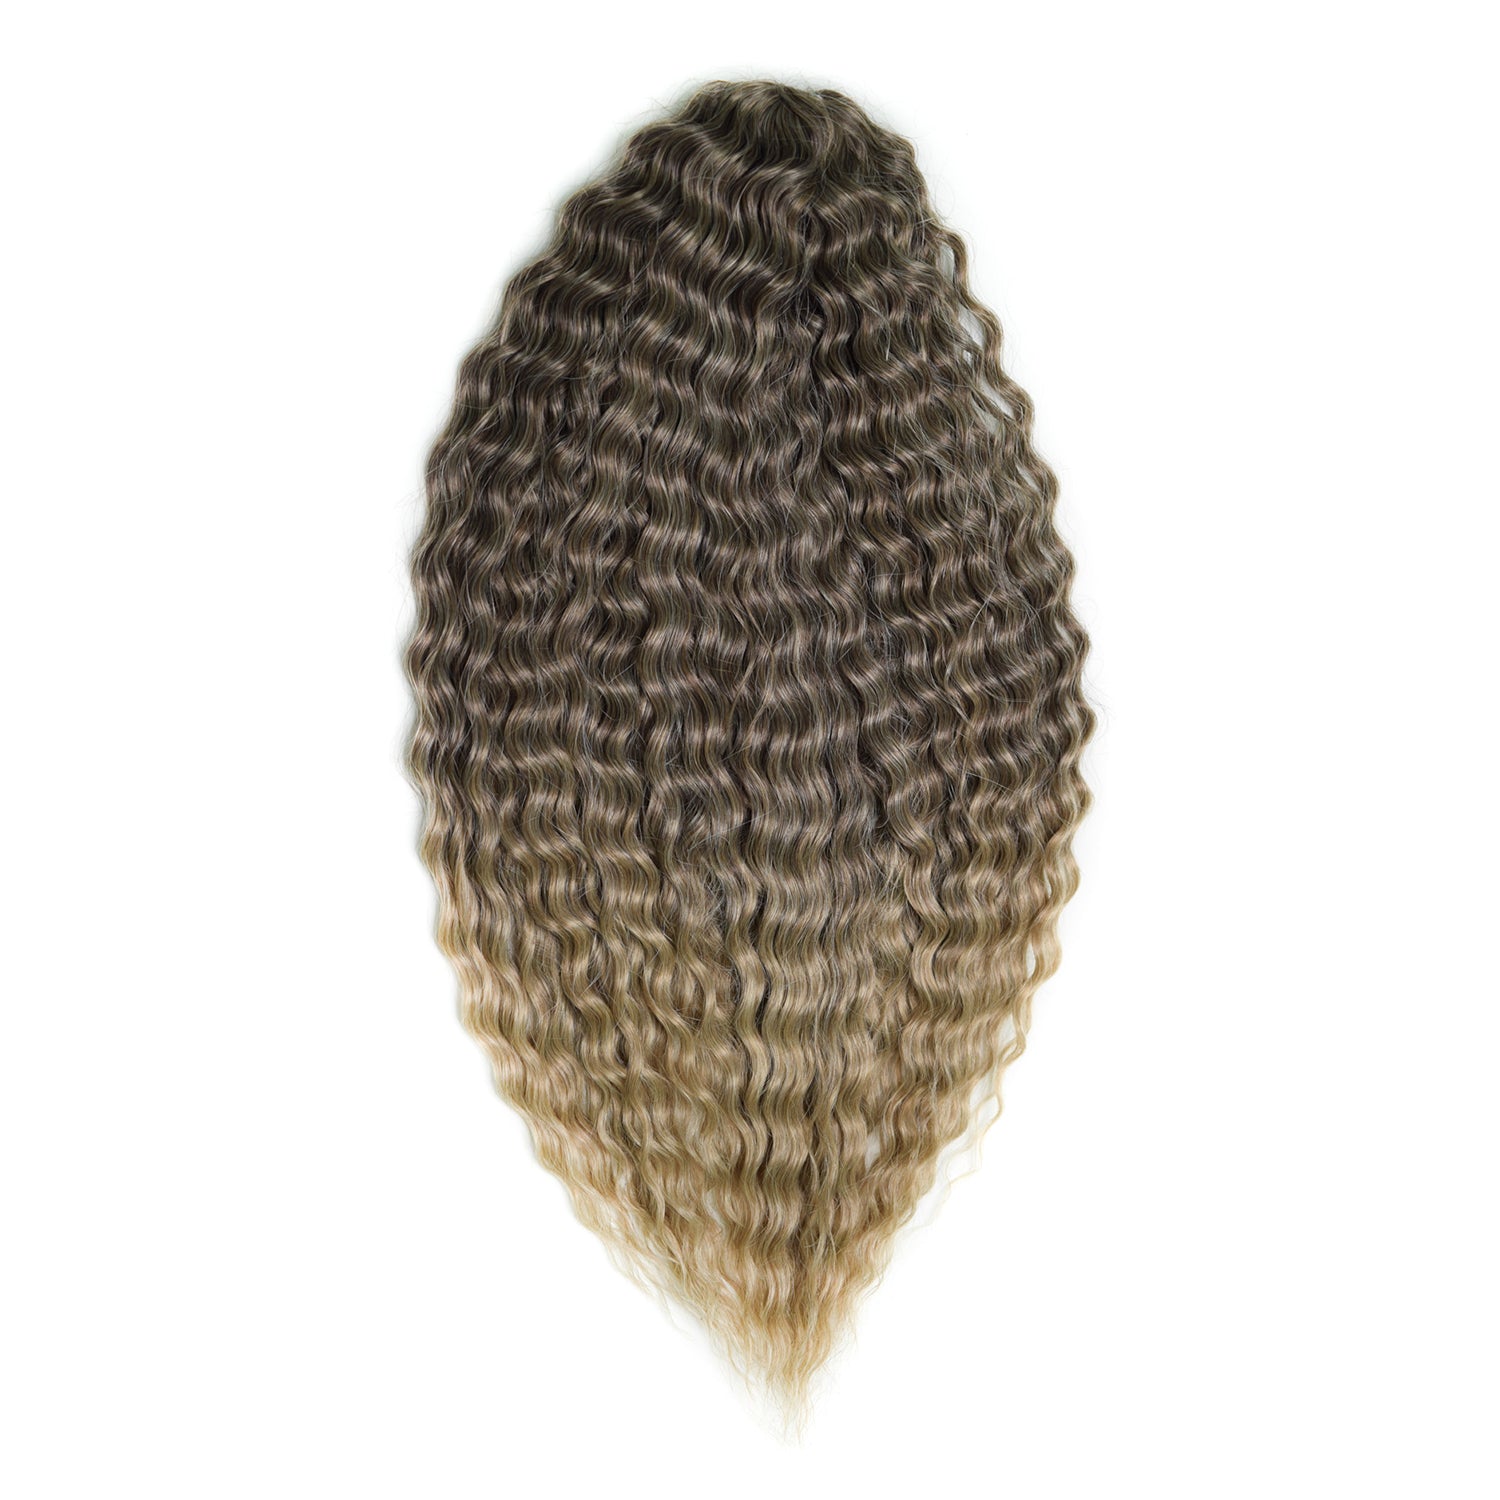 Афрокудри для плетения волос Ariel цвет T4 22 русый длина 55см вес 300г резиночки для плетения браслетов rainbow loom коллекция средневековье лайм